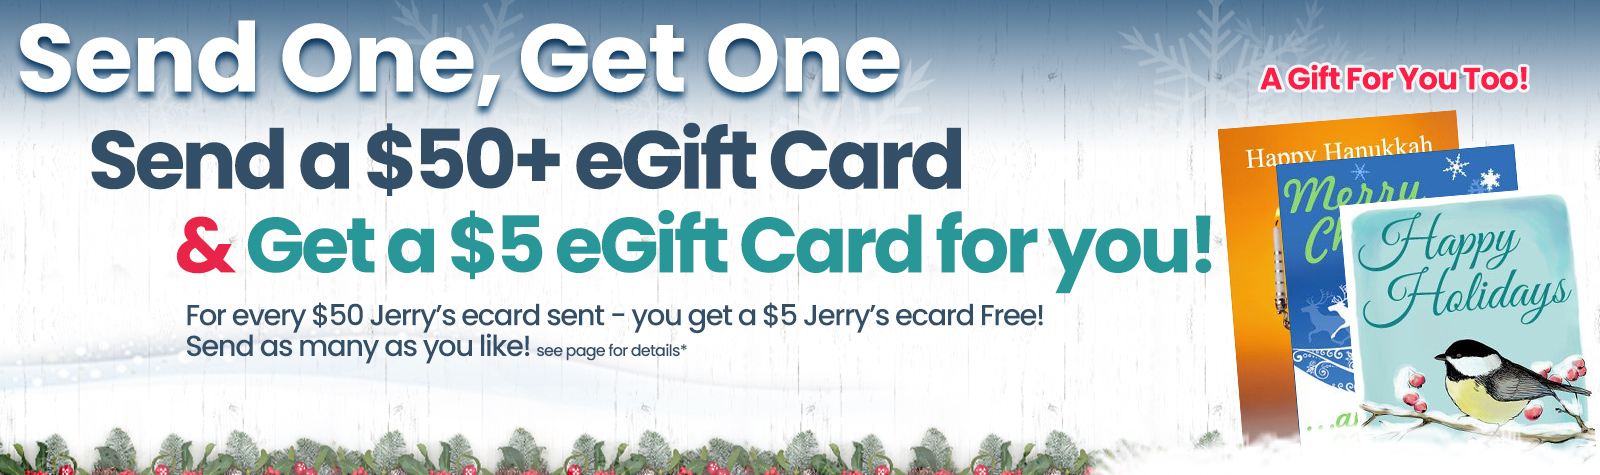 Get a free Jerrys ecard